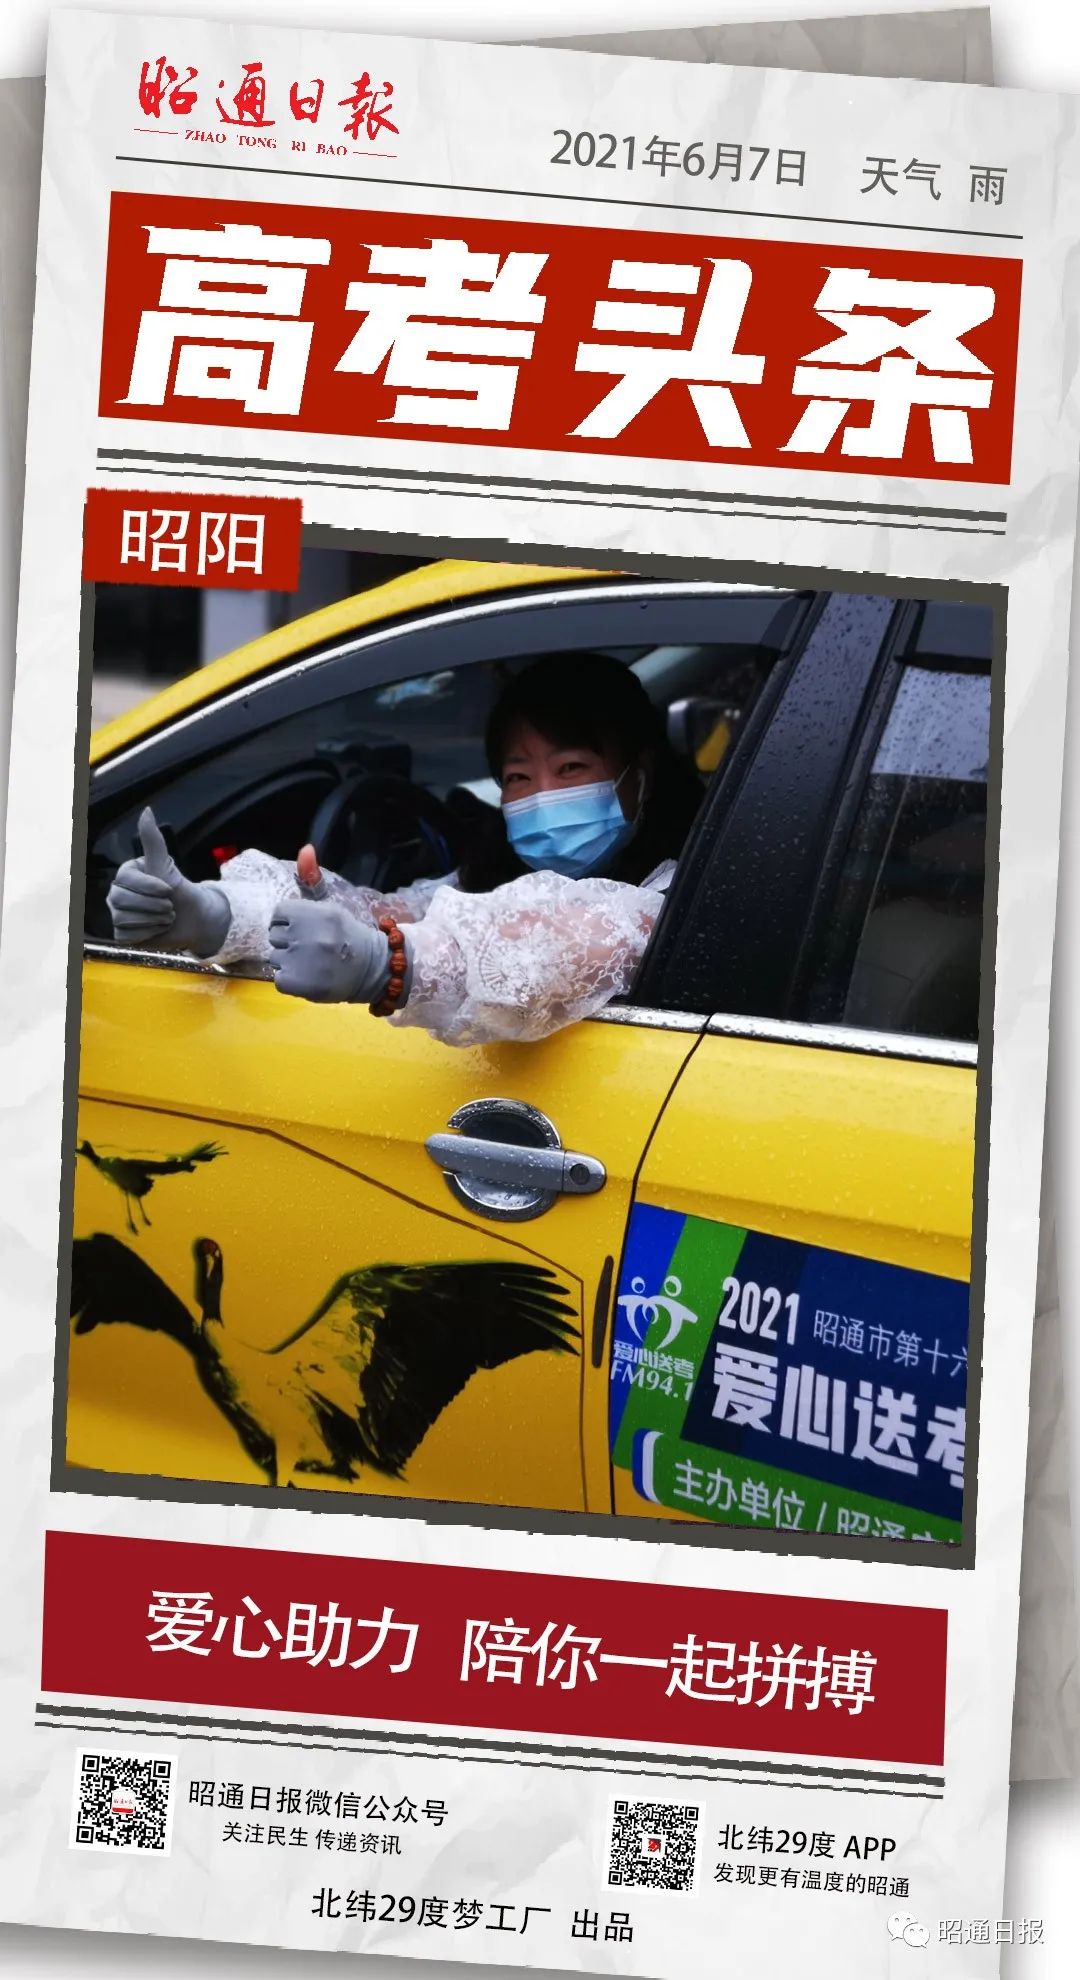 金鹭,昭阳区人,今年43岁,2009年开始跑出租车,今年是她参与爱心送考的